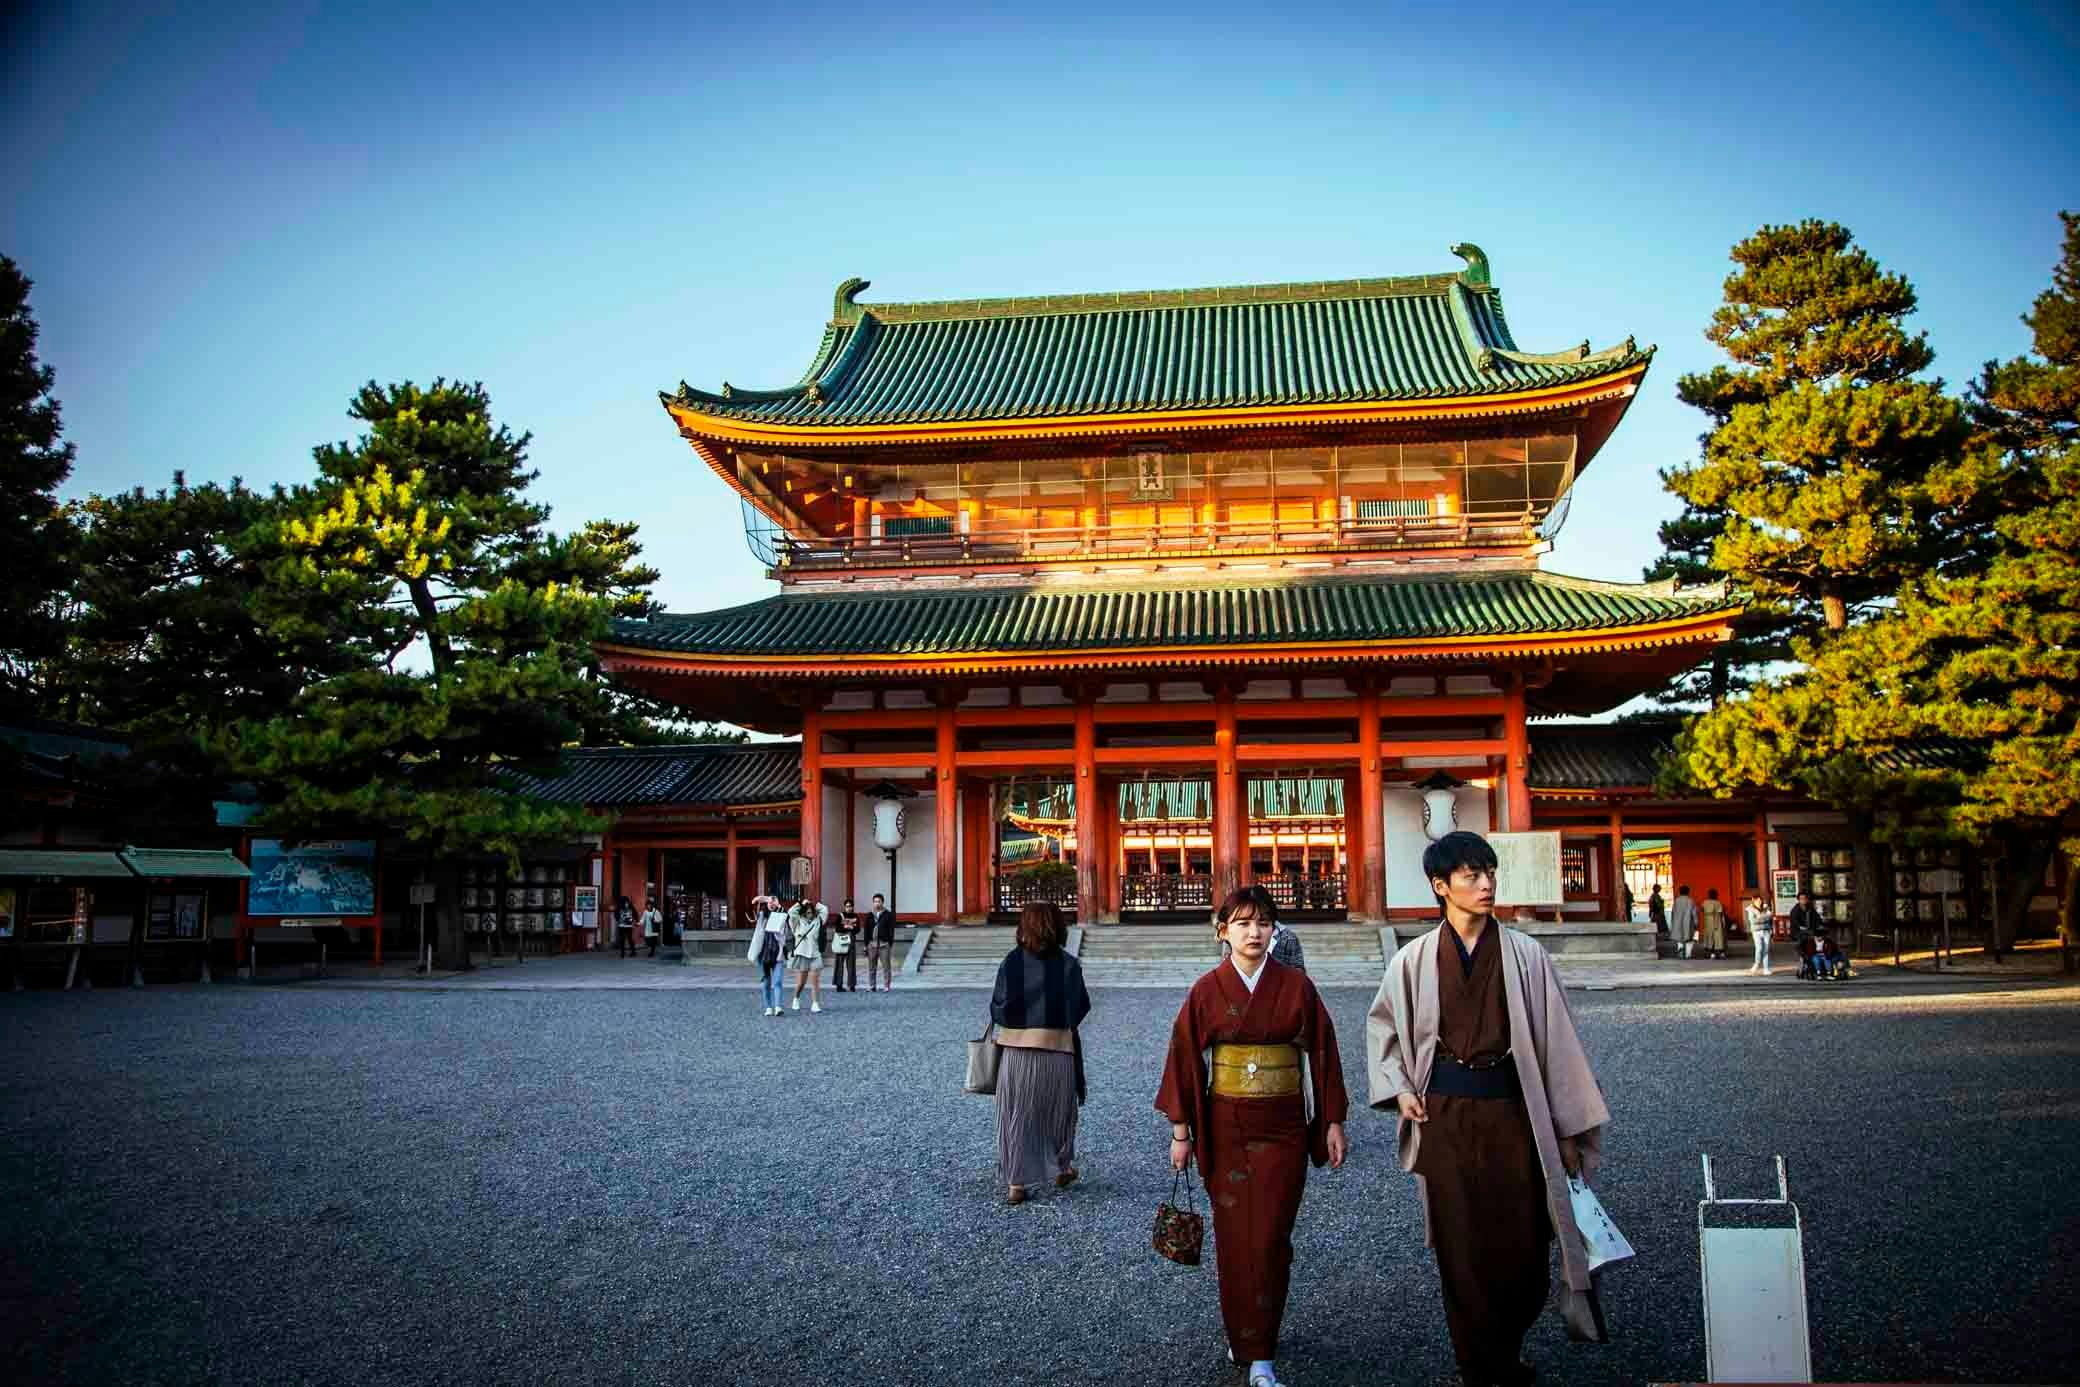 Heian-Jingu Shrine: A Glimpse into the Golden Age of Japan's History